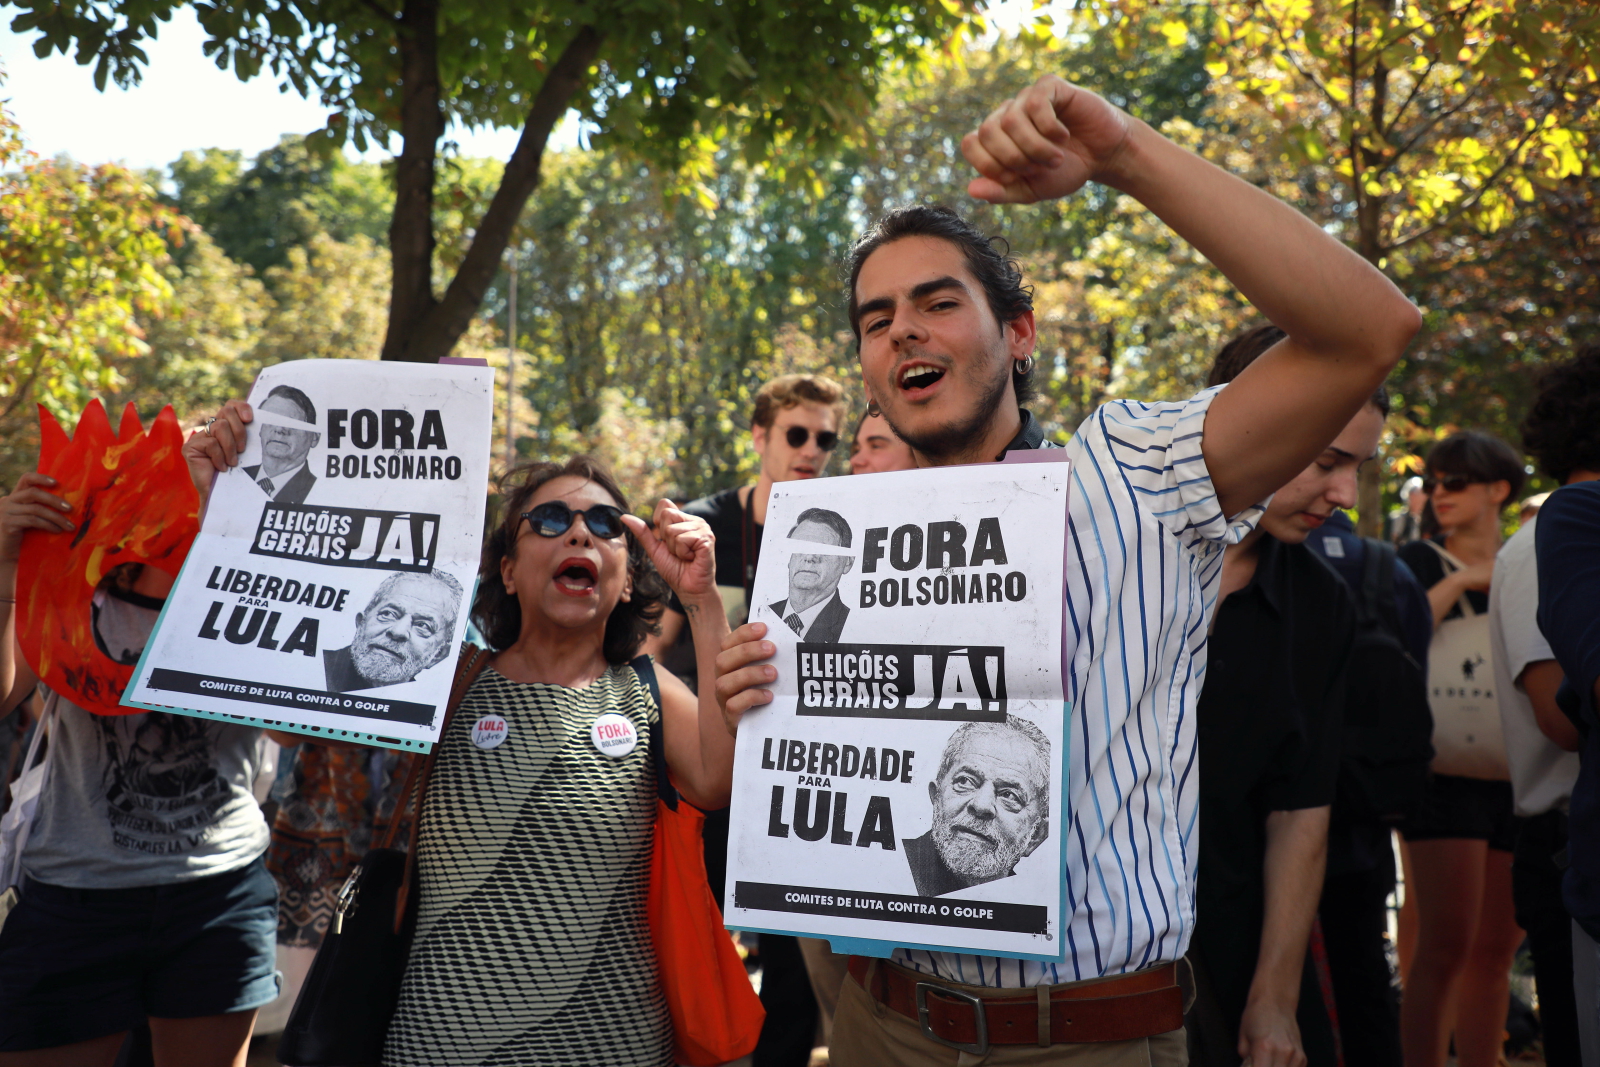 Protesty ekologów we Francji przeciwko polityce prezydenta Brazylii -  Bolsonaro,EPA/CHRISTOPHE PETIT TESSON 